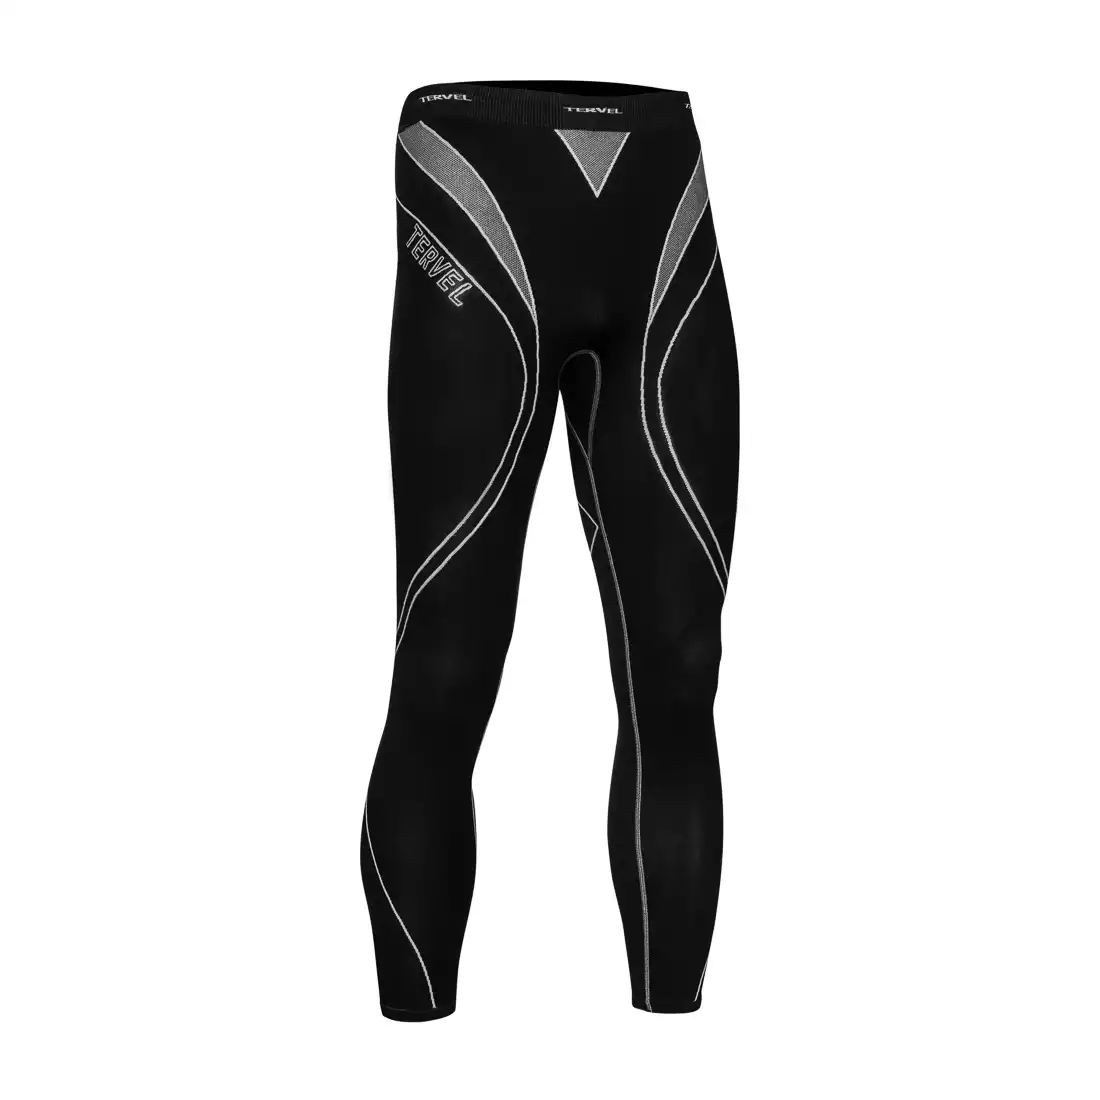 TERVEL OPTILINE męskie spodnie termoaktywne OPT3004, czarno-szare